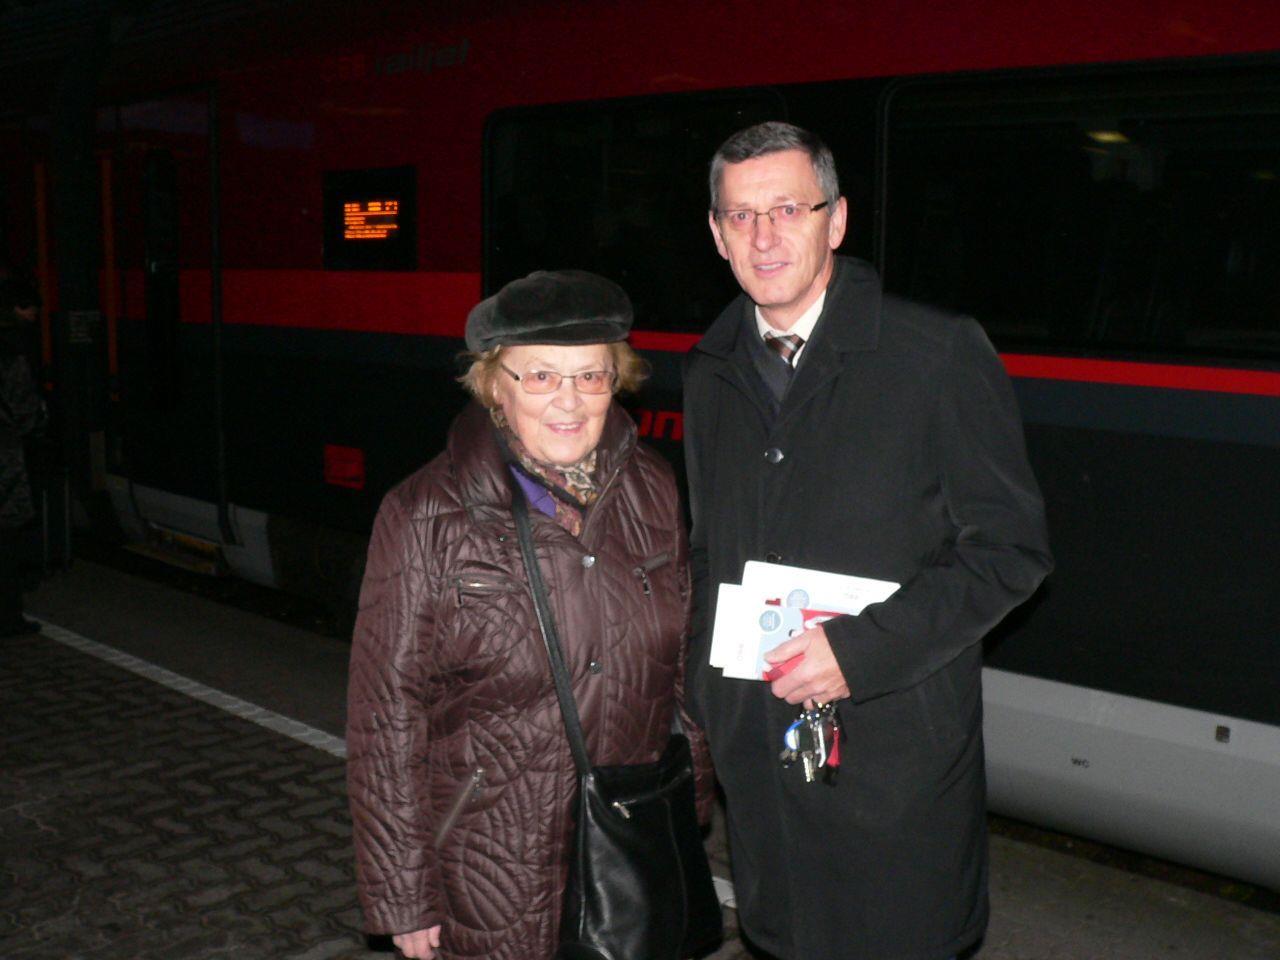 Vorarlbergs ÖBB Regionalmanager Gerhard Mayer überreichte der glücklichen Erika Schuhmacher aus Bregenz vor dem railjet den Preis